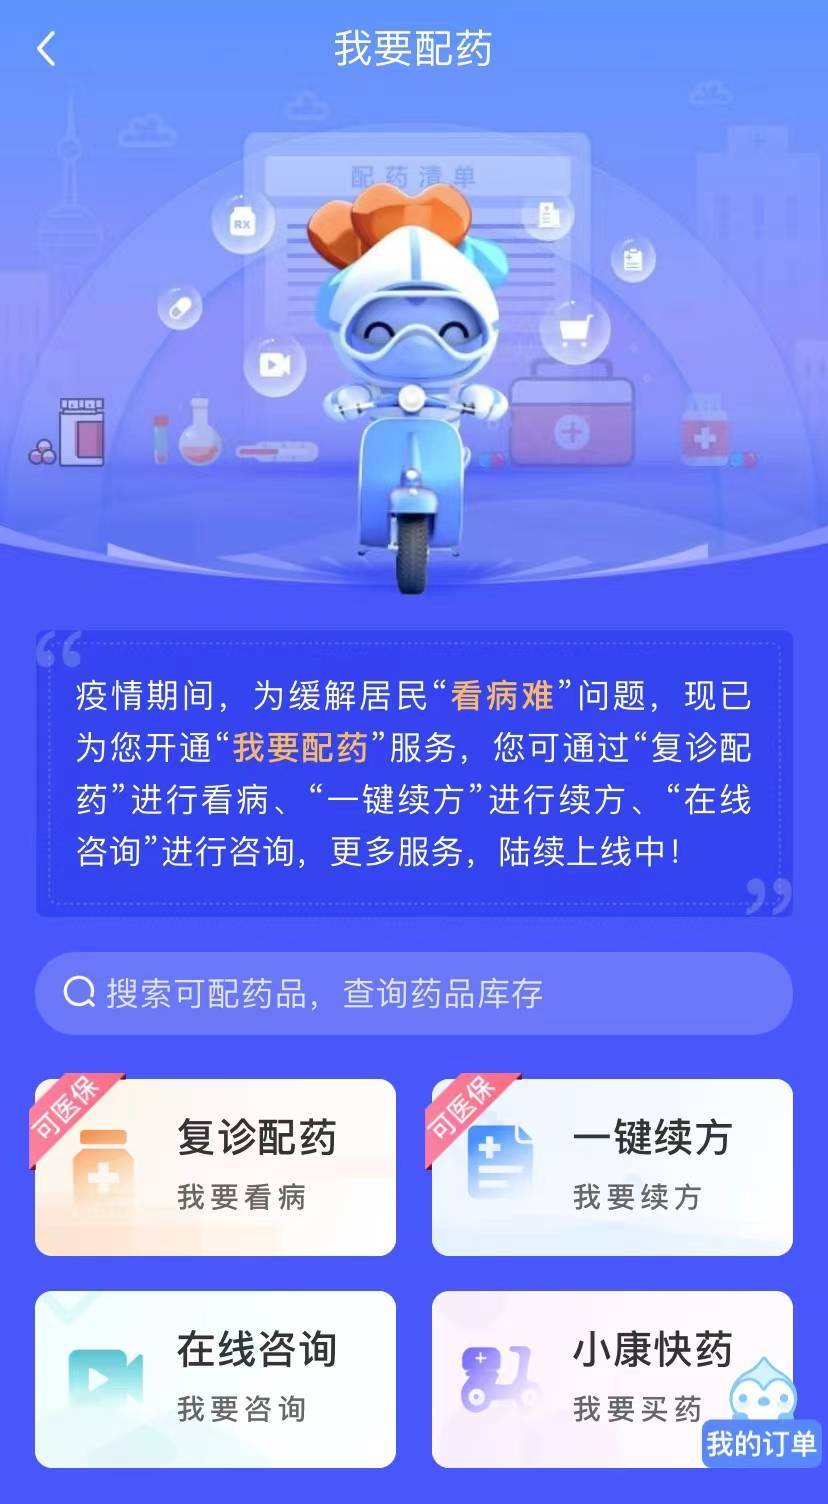 上海健康云平台已开10万张处方超6万份药品送到居民家中